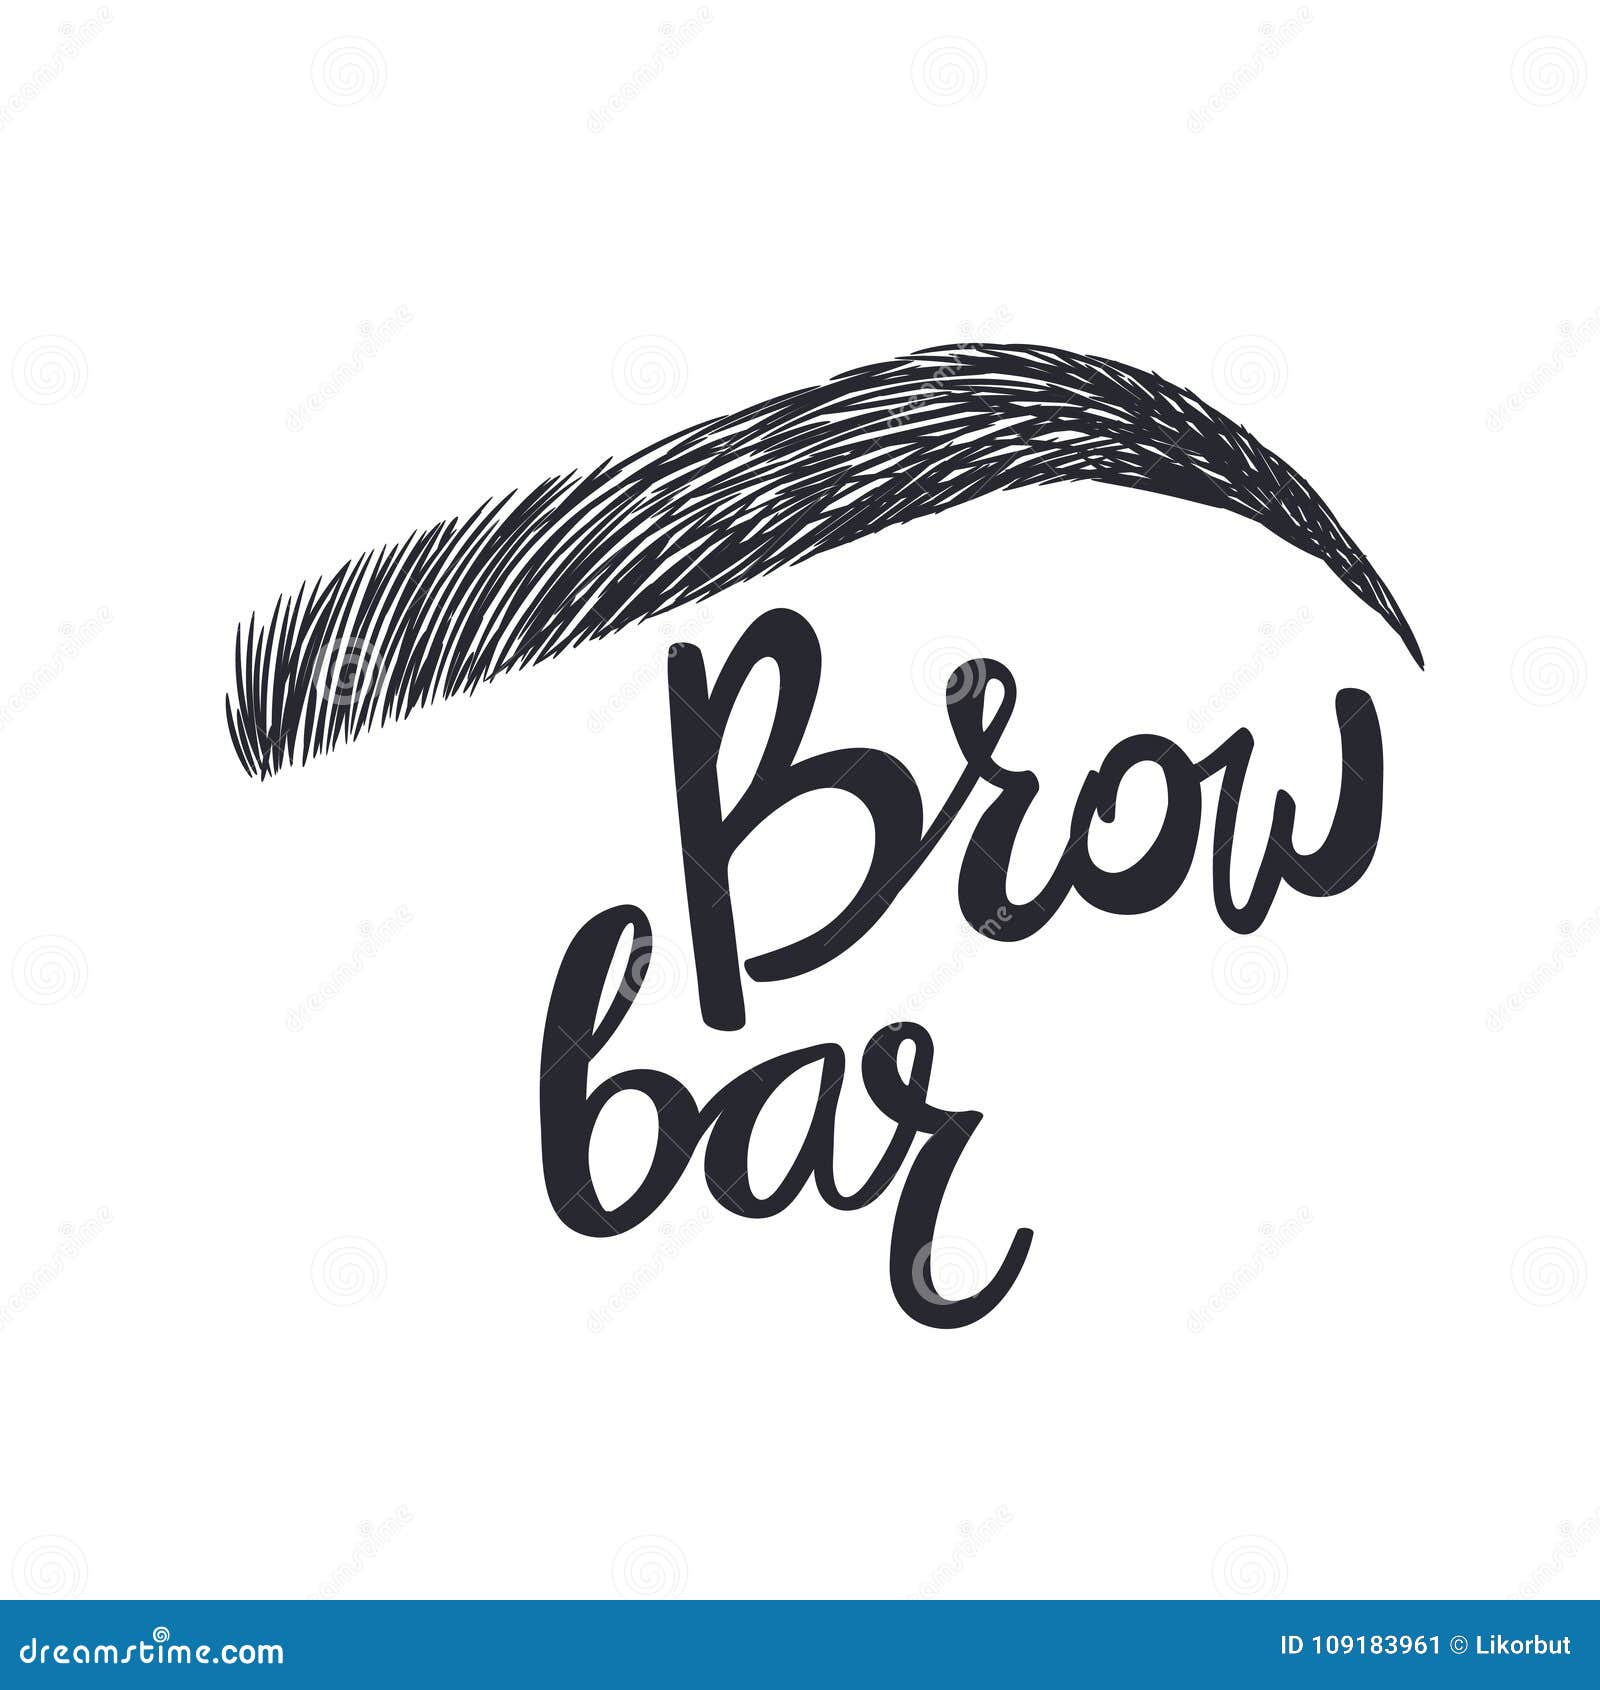 brow bar. text and eyebrow